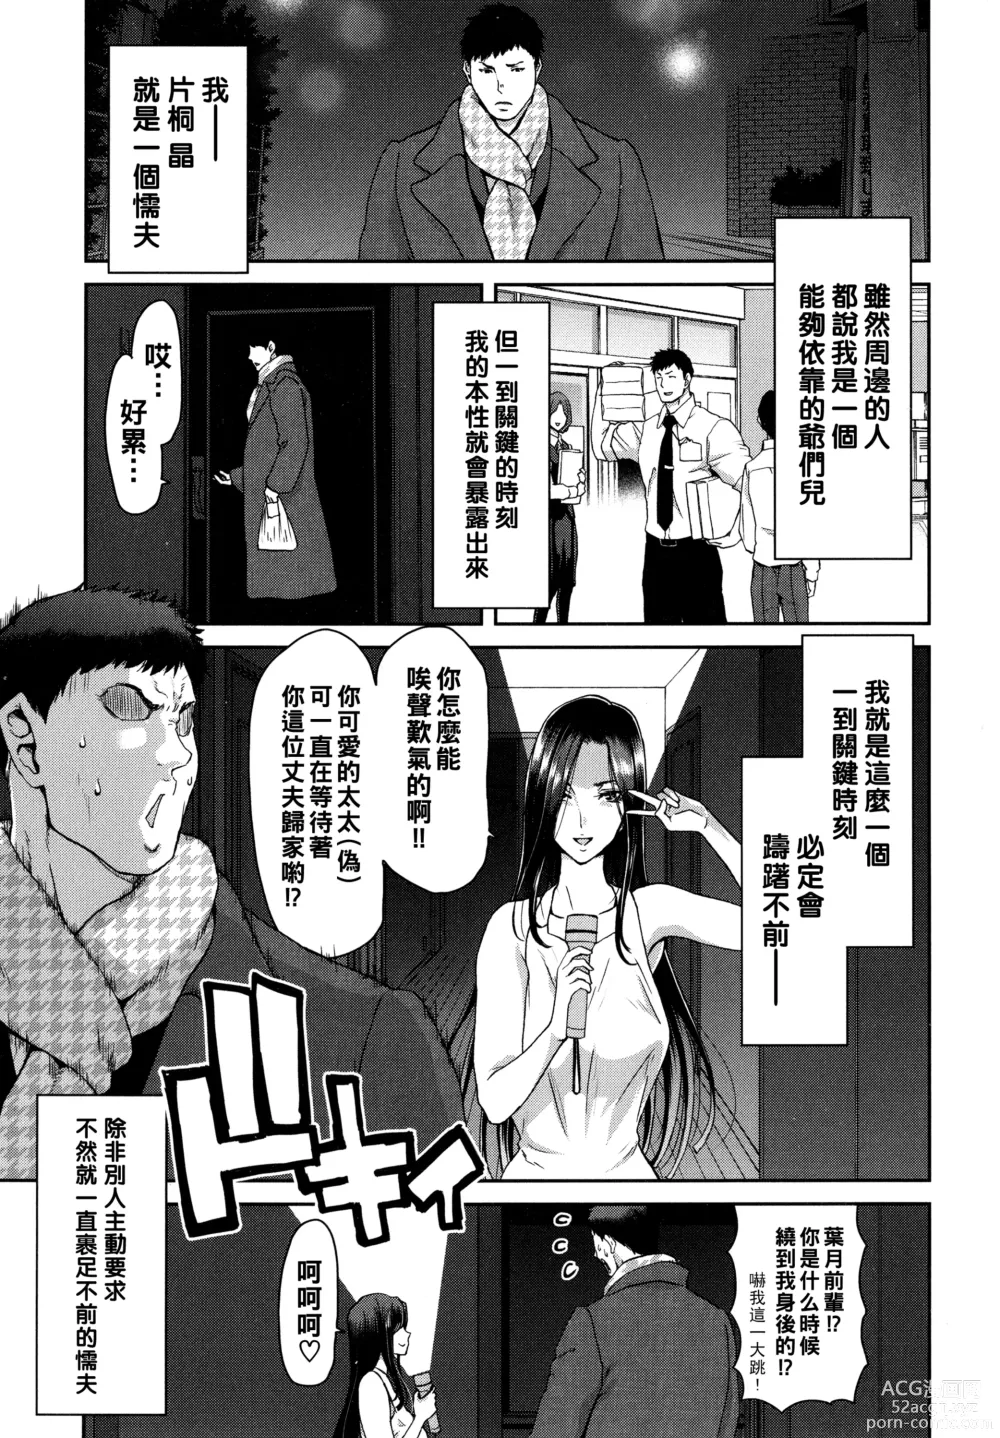 Page 5 of manga Iede Onna o Hirottara - When I picked up a runaway girl. + Melonbooks Gentei Tokuten   Otona no Iede Gojitsudan Sono Ato no Arisa to Akira